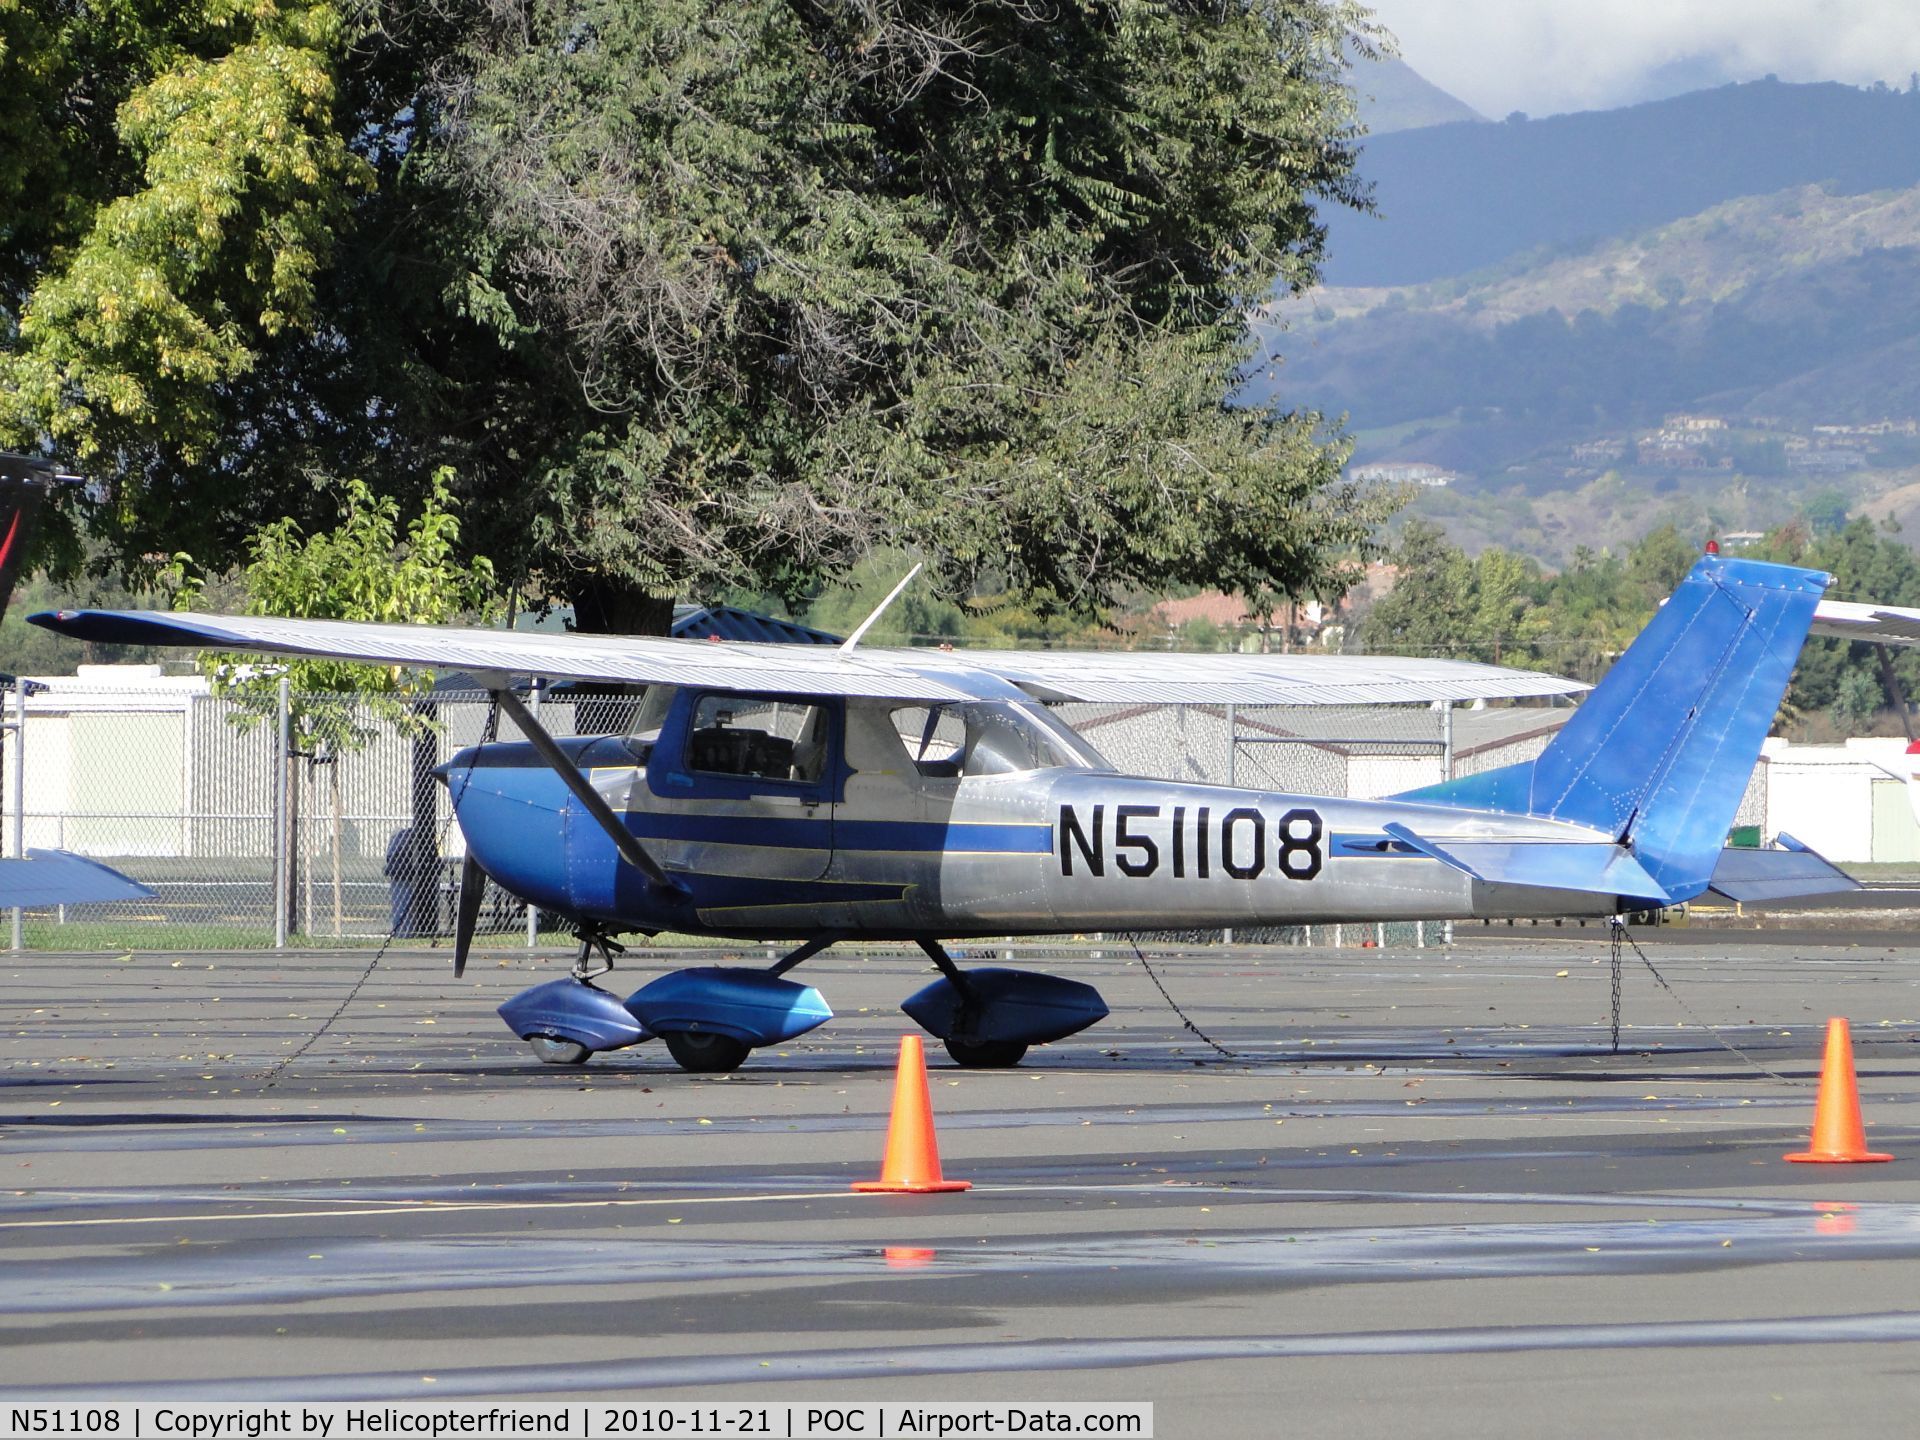 N51108, 1968 Cessna 150J C/N 15069772, Parked in trnsient parking area